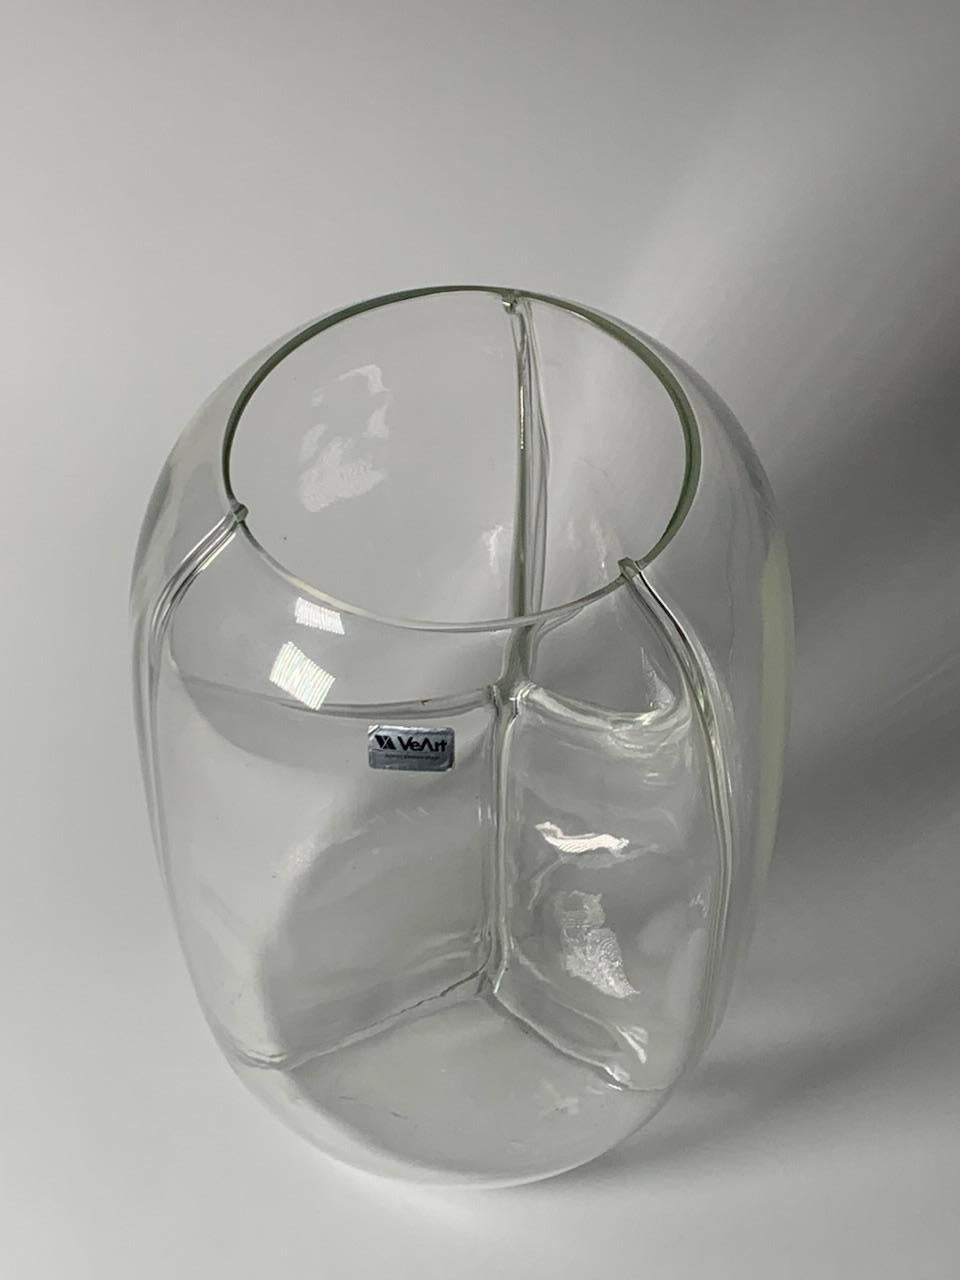 Modern Italian Murano Glass Vase Membrane Model by Toni Zuccheri for VeArt For Sale